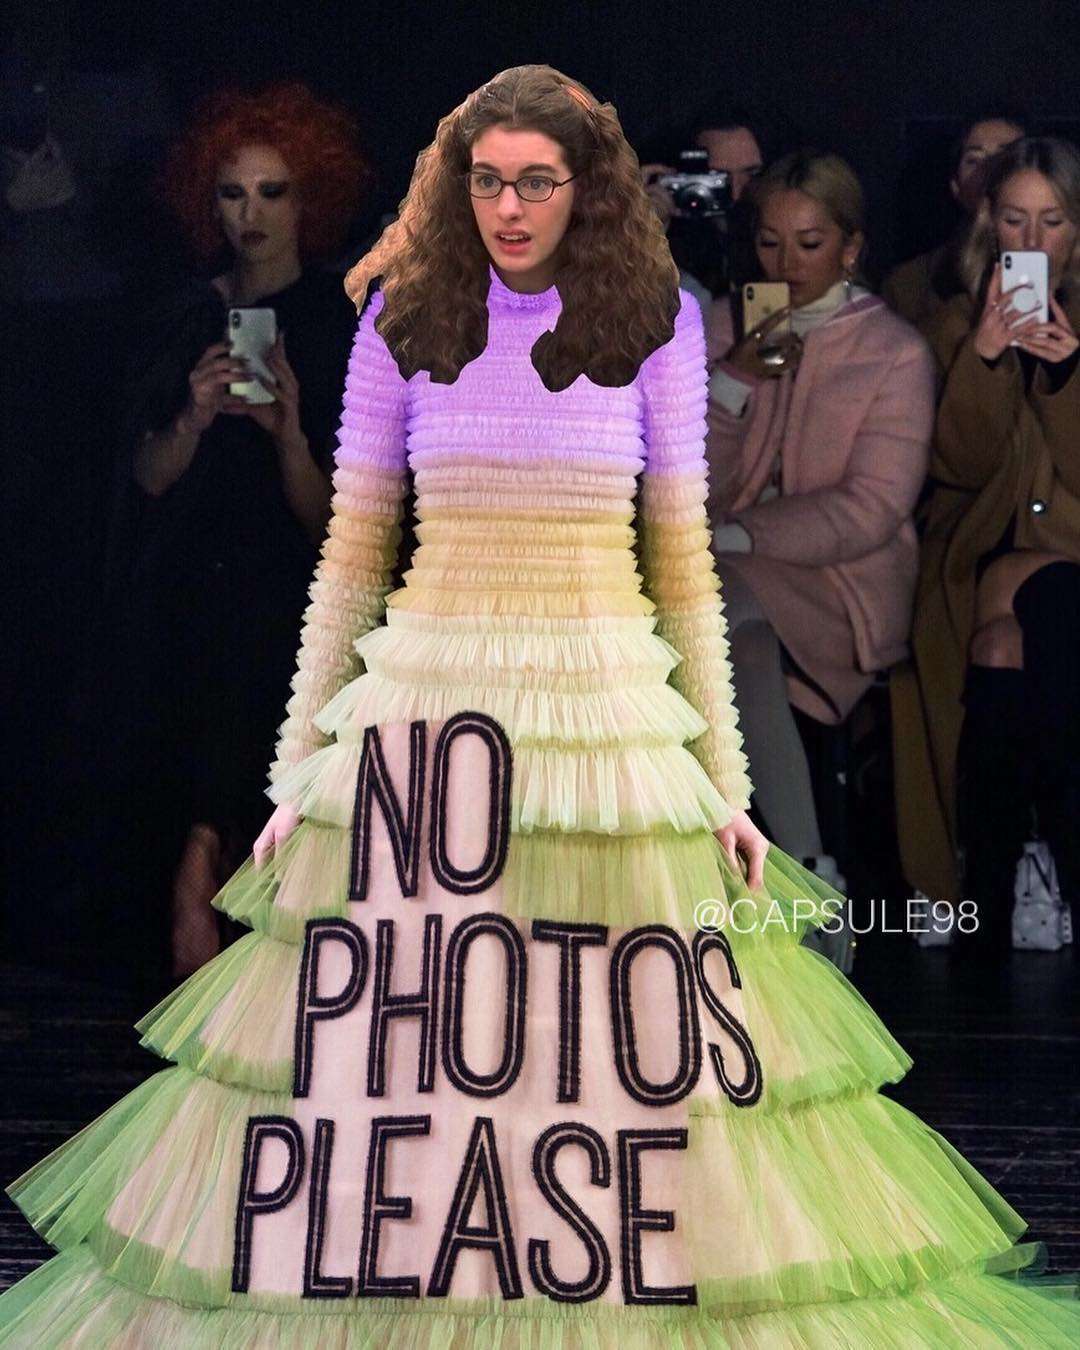 No photos please: дизайнеры создали платья с мемами, а они снова стали мемами - фото 419661